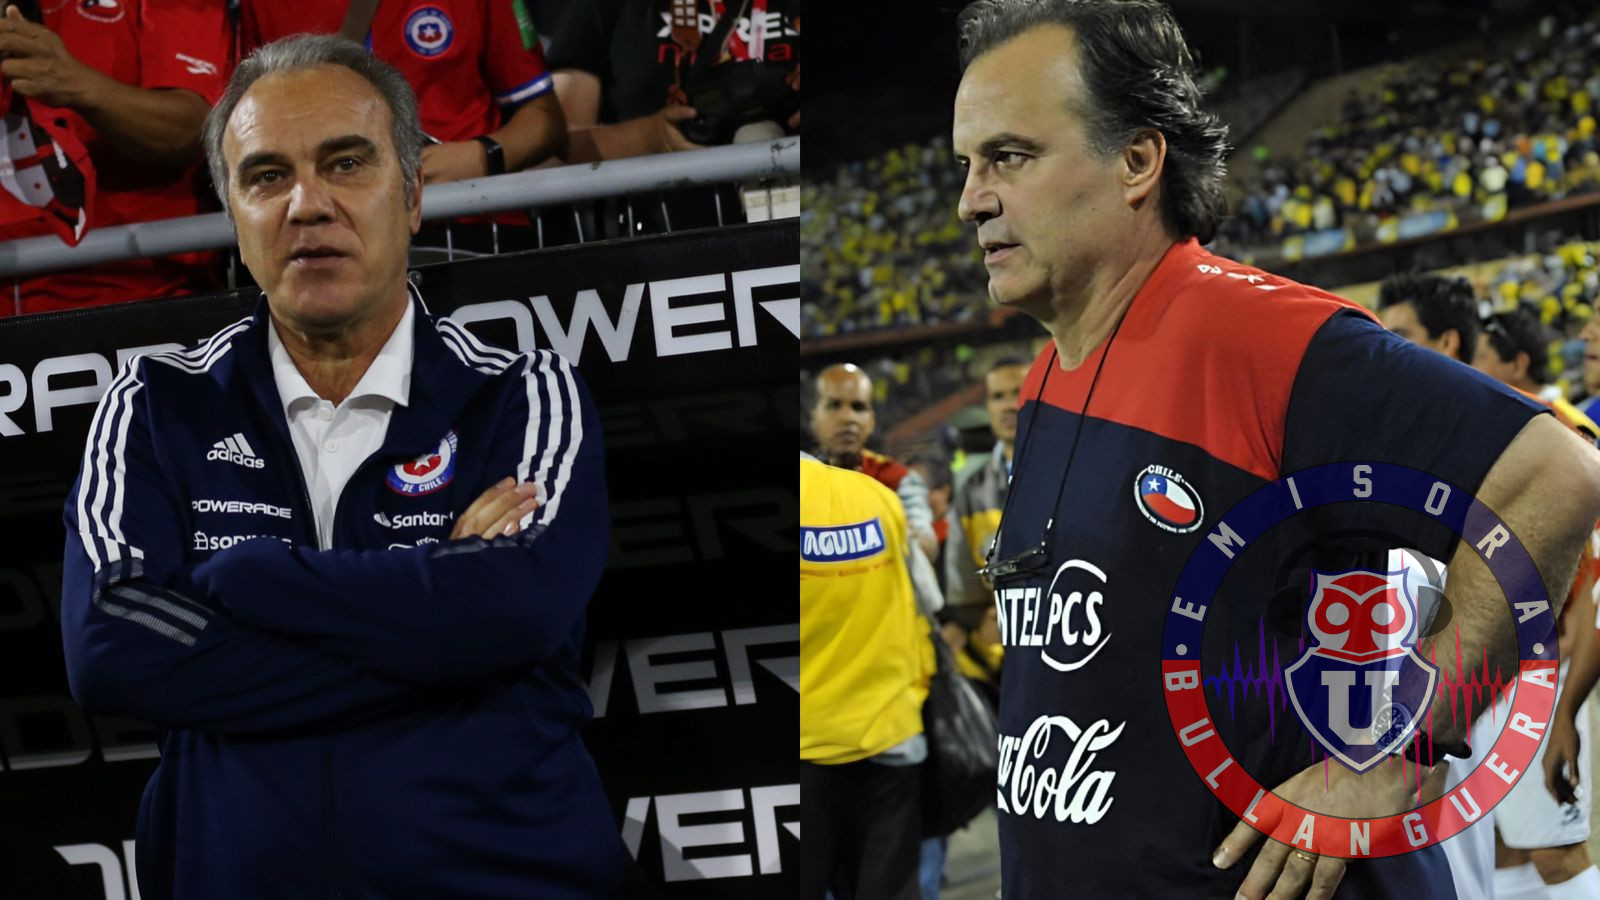 Martín Lasarte apunta a Bielsa por el fracaso con Chile: “Todos tuvimos problemas para plantear nuestra idea”